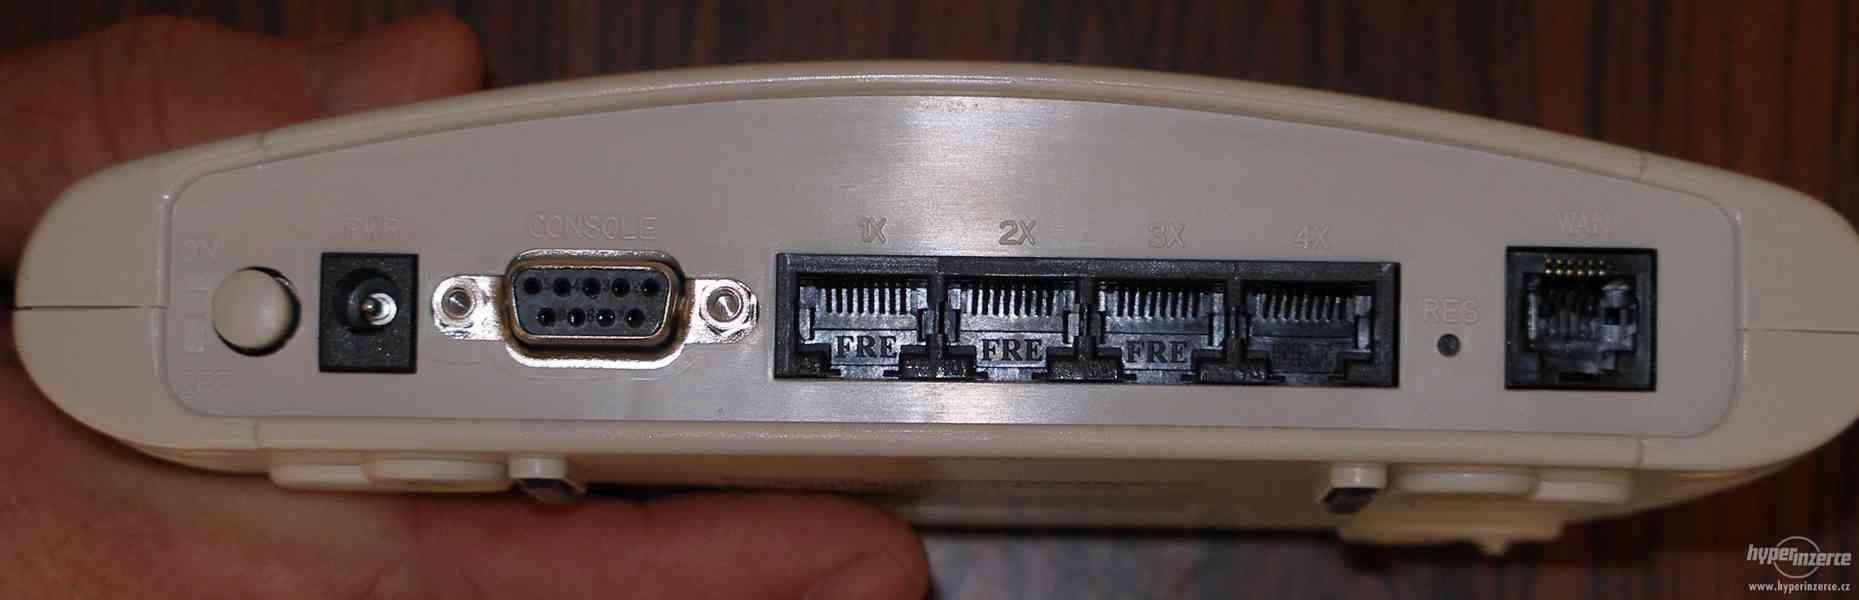 Prodám zachovalý a funkční modem/router ADSL XAVi X81122r - foto 1